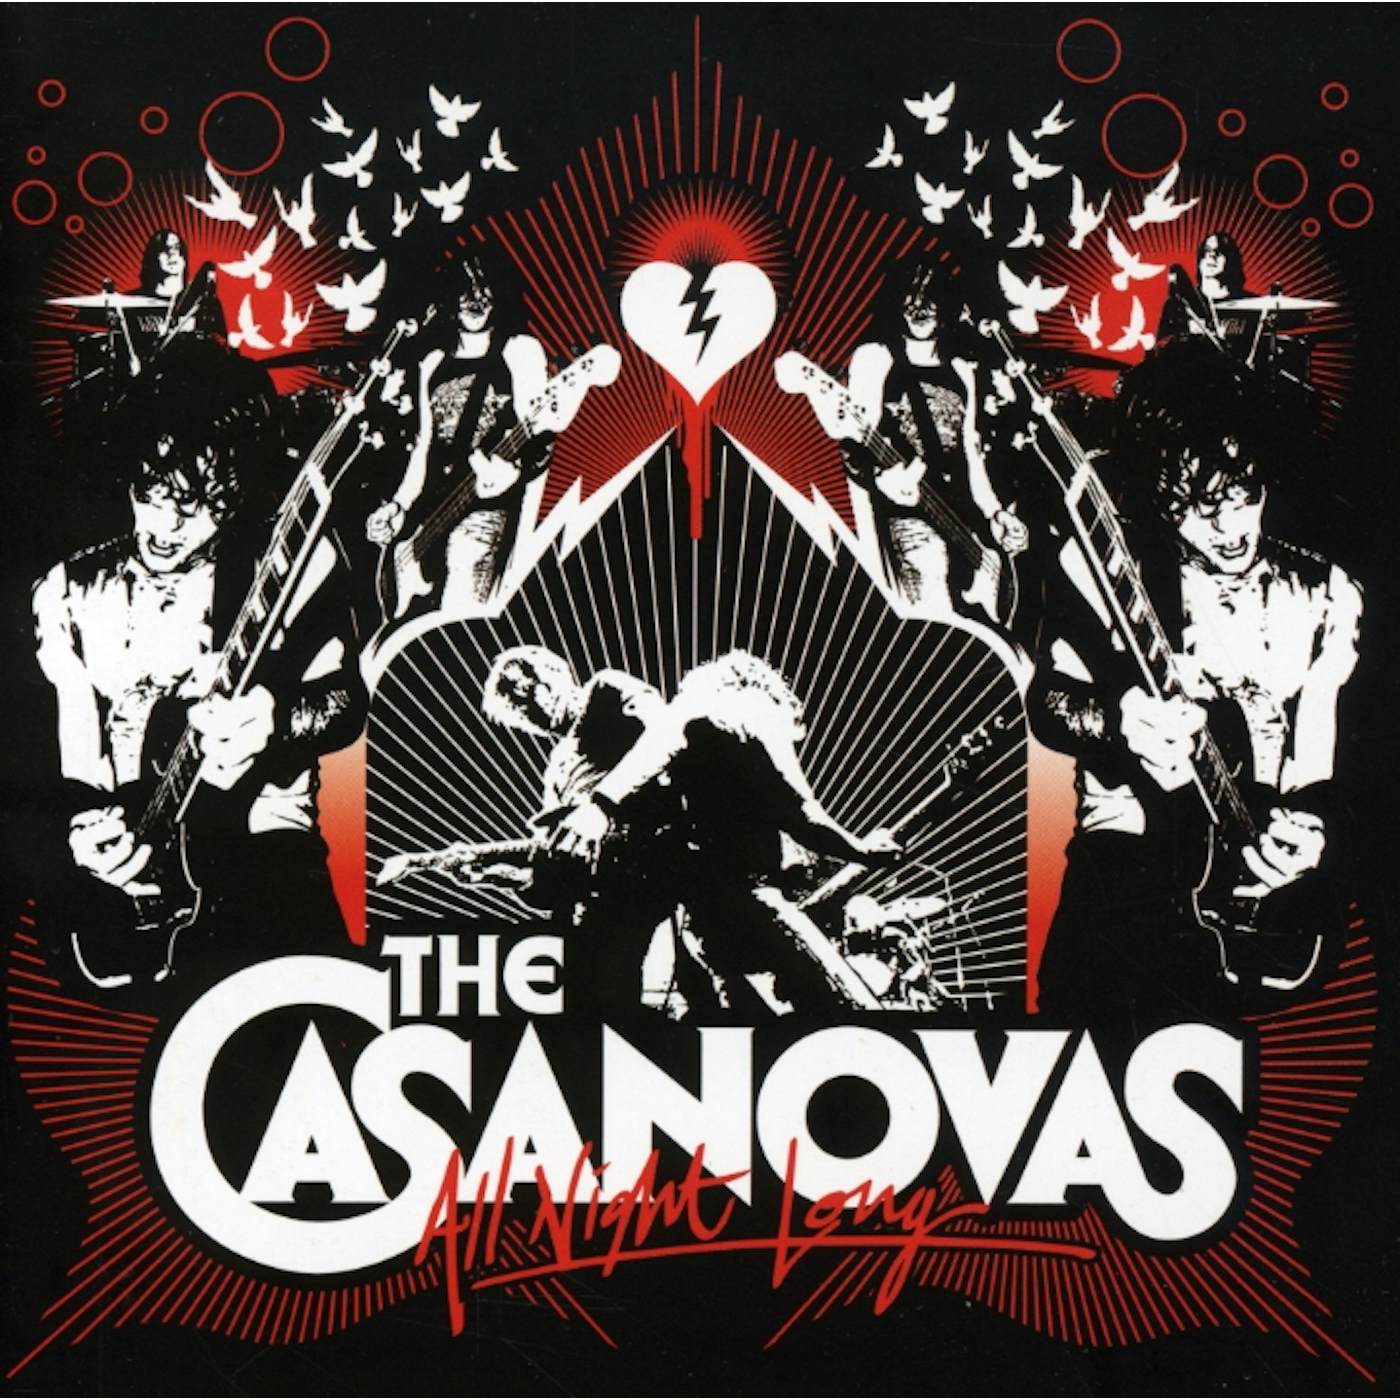 The Casanovas ALL NIGHT LONG CD